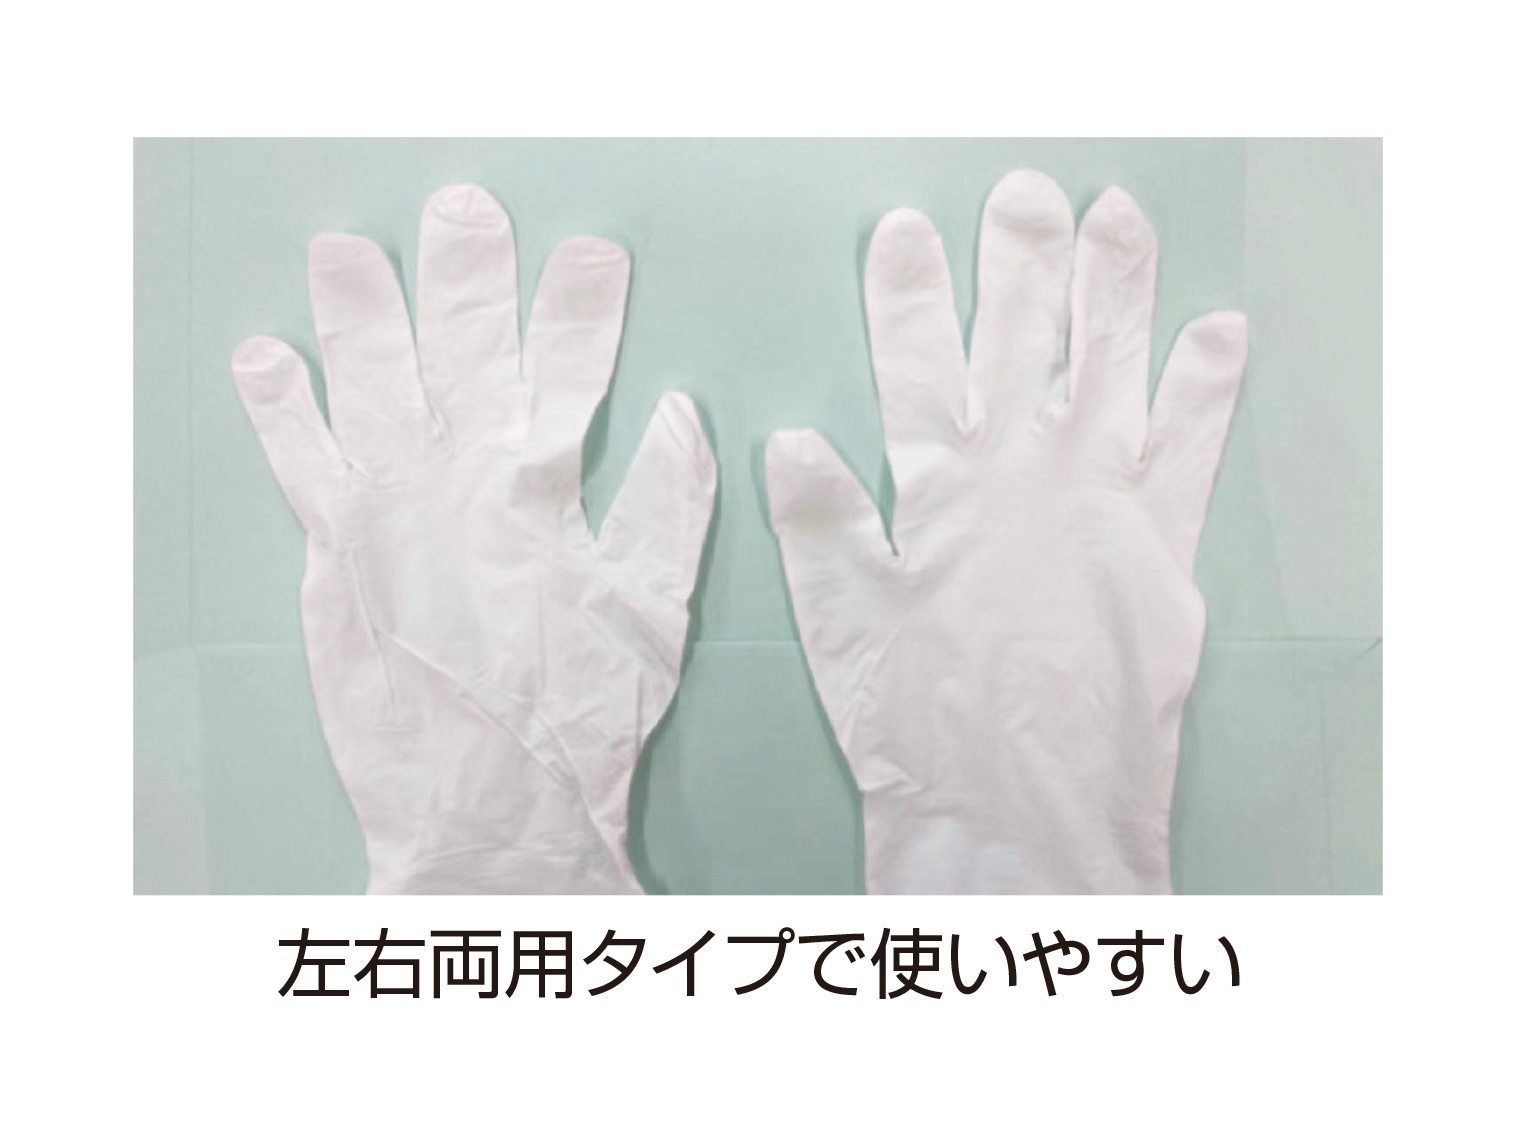 【楽天市場】8.8円/枚 ニトリル極薄手袋 Sサイズ ホワイト 粉無し